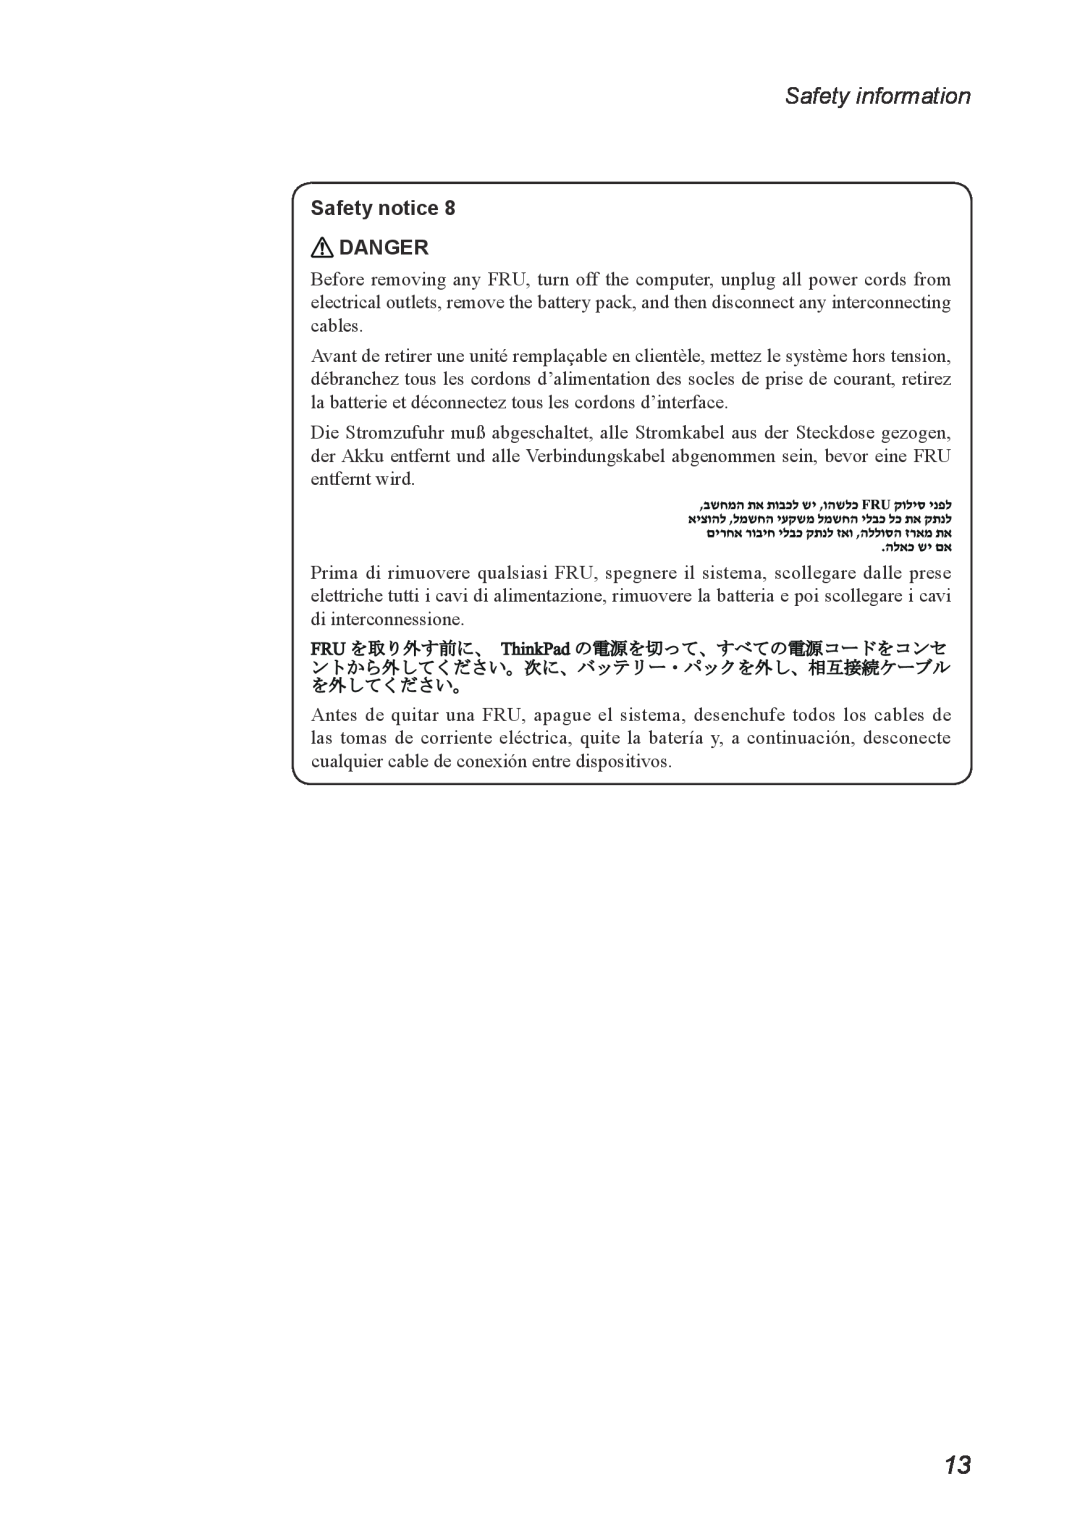 Lenovo U260 manual Safety information, Safety notice DANGER 